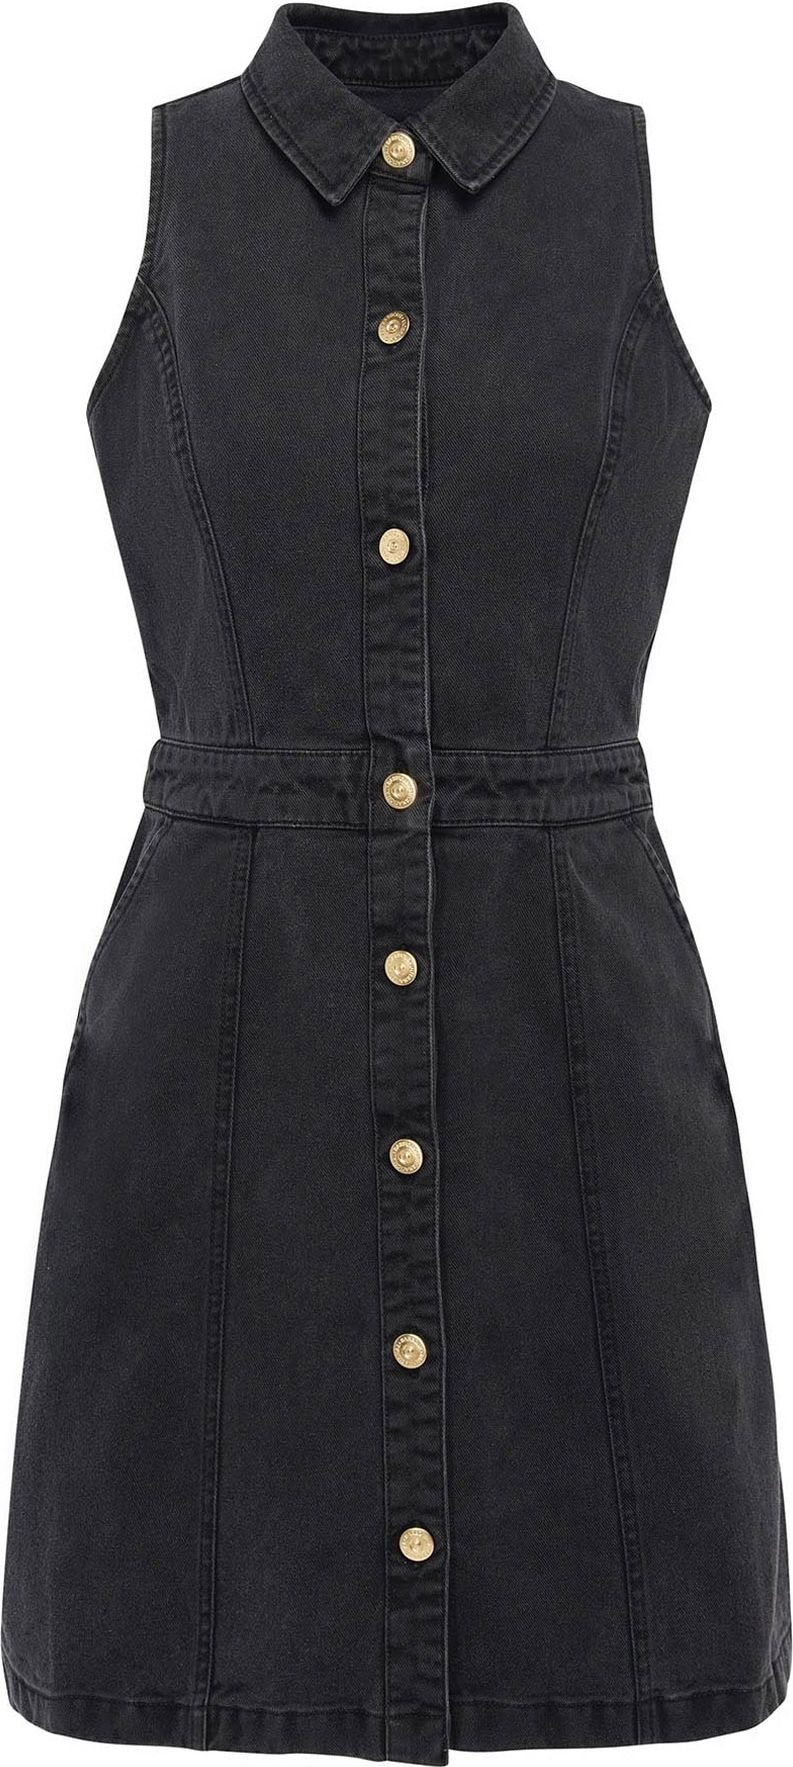 Barbour International Košilové šaty 'Lockhart' černá džínovina